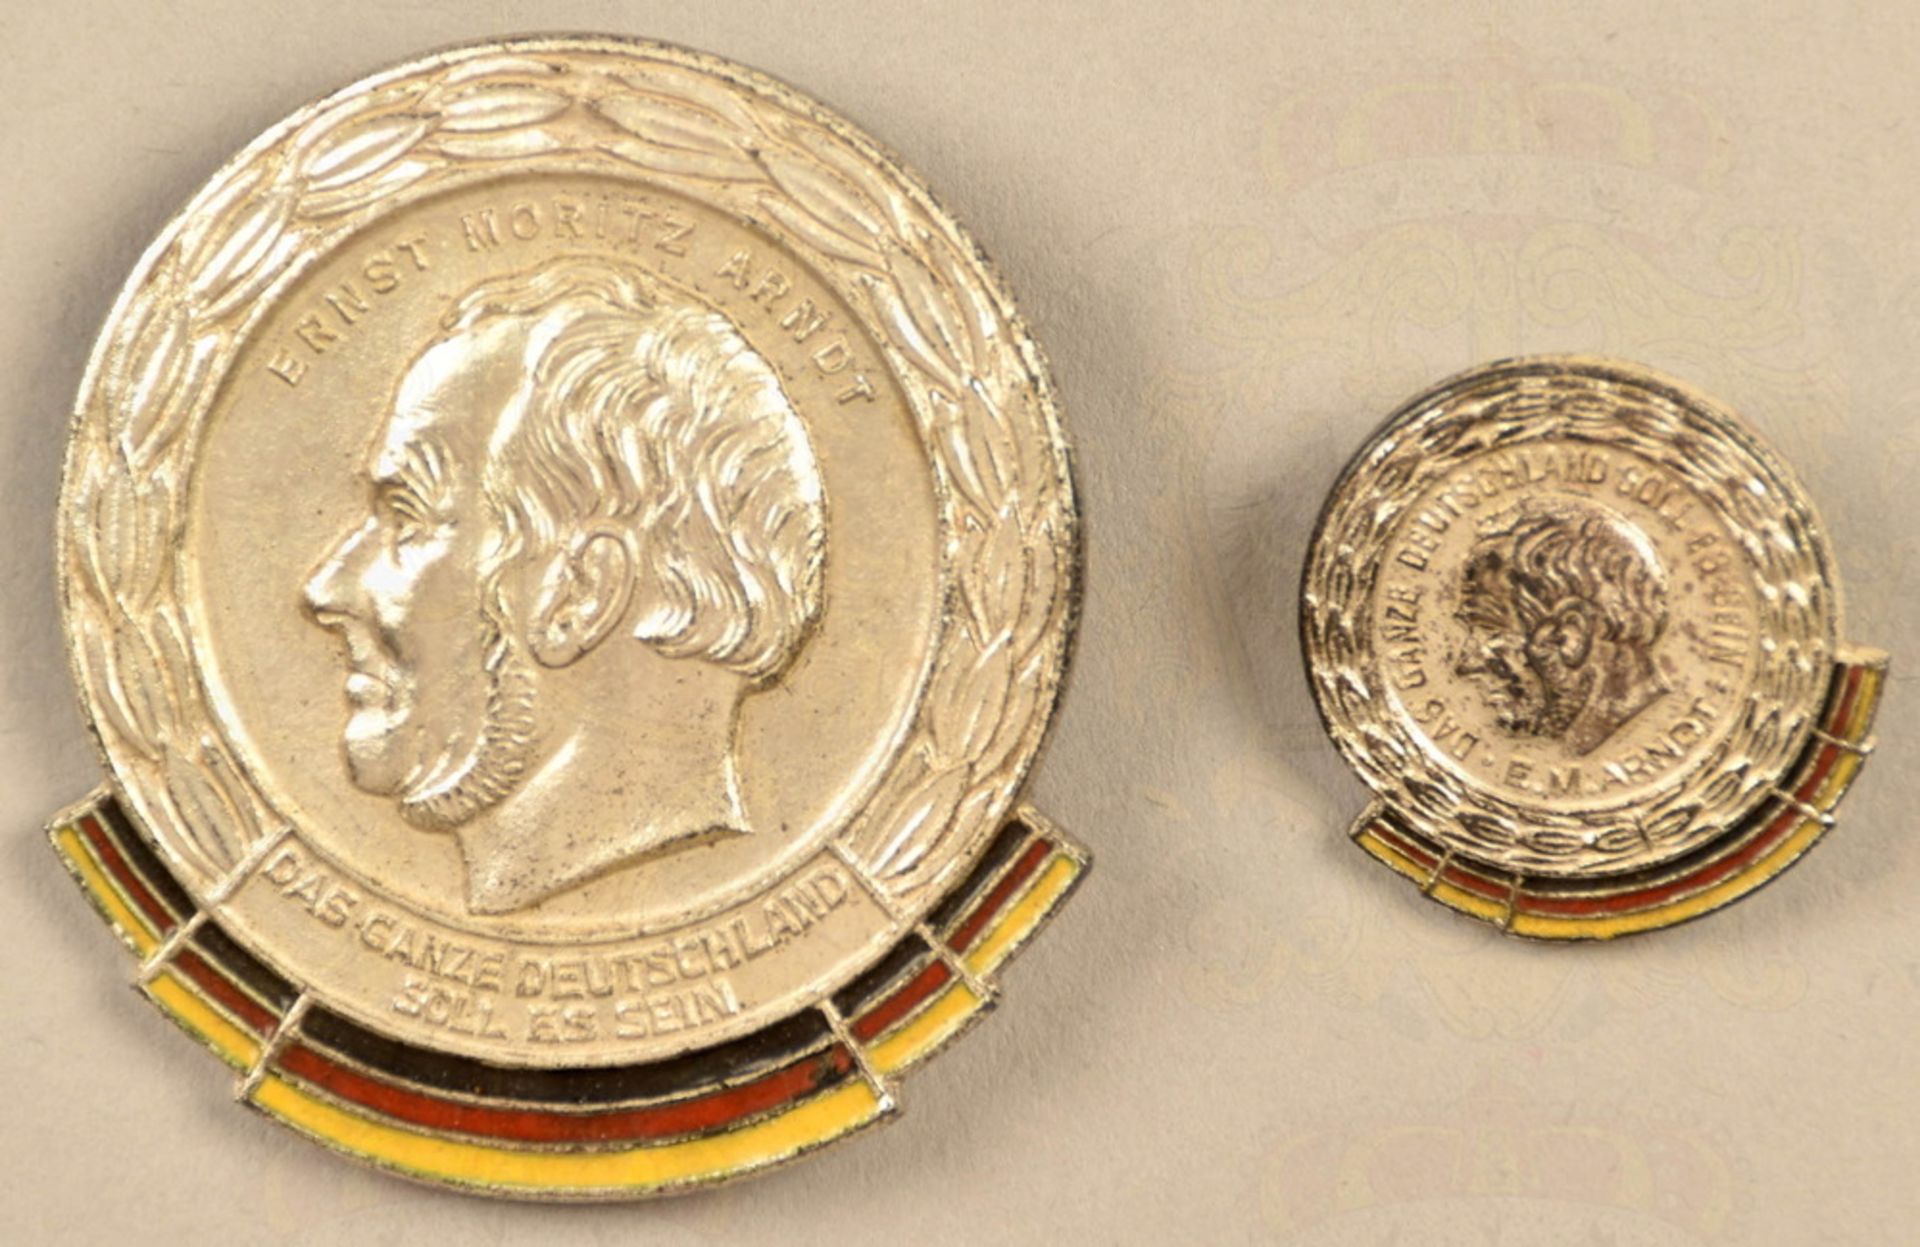 GDR Ernst-Moritz-Arndt medal with miniature 1963-1964 - Image 2 of 3